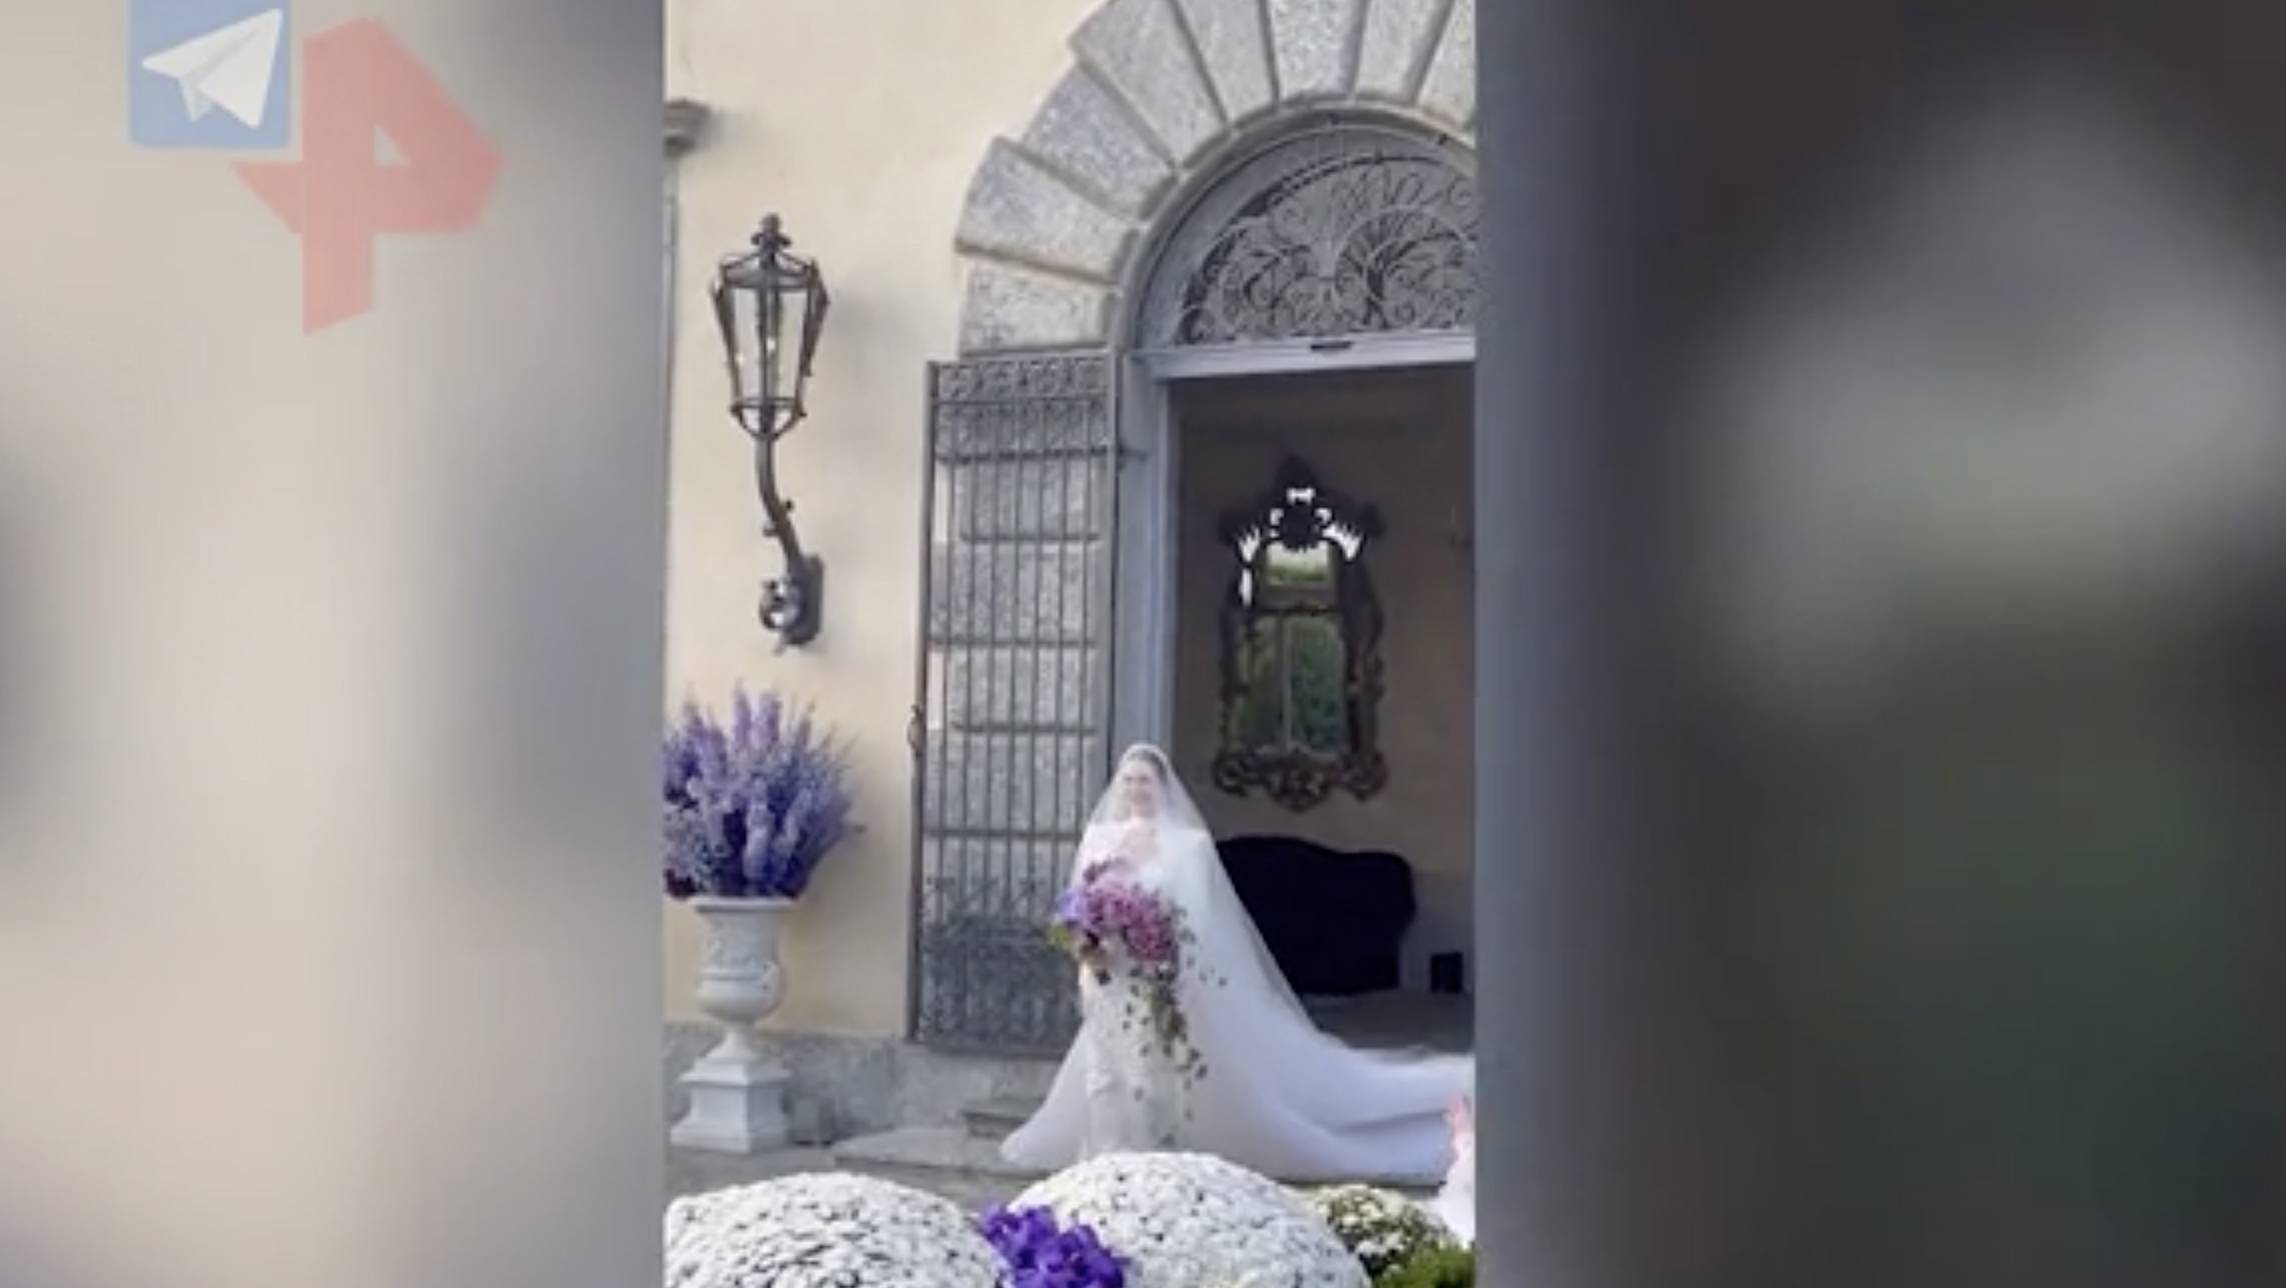 вавилов свадьба в италии фото